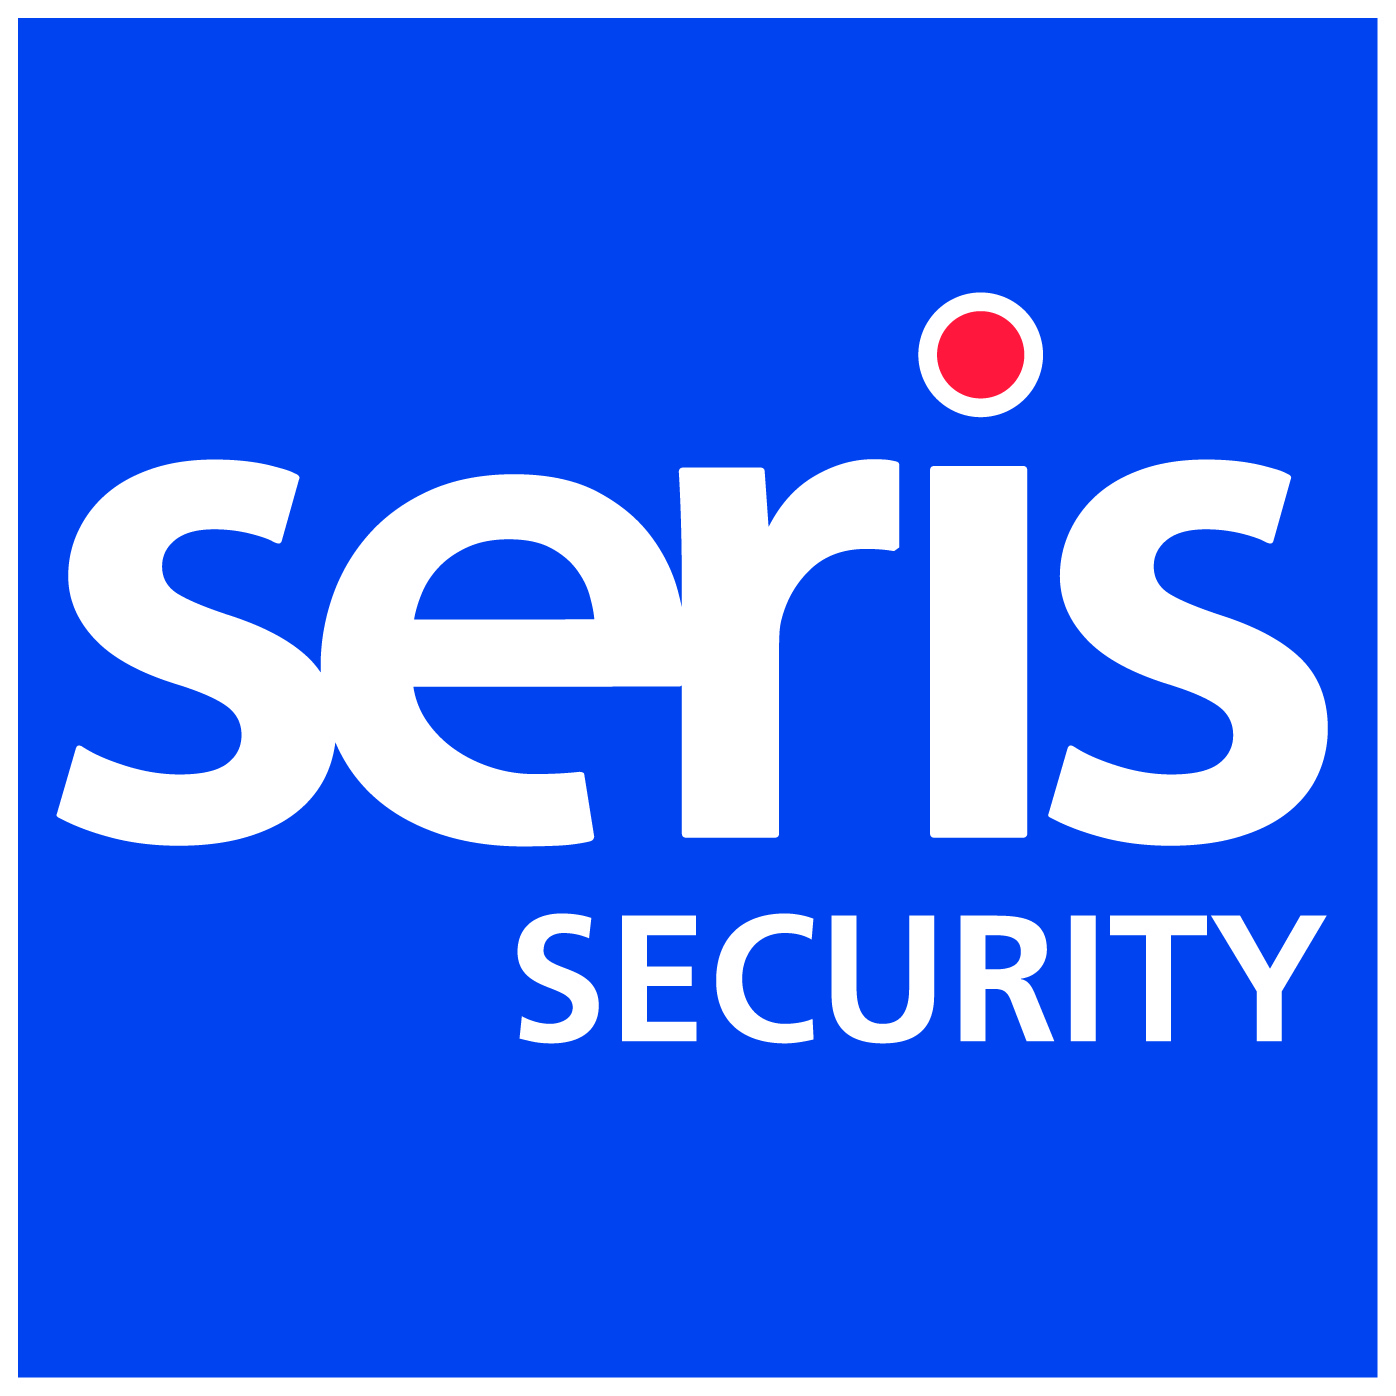 SERIS Security